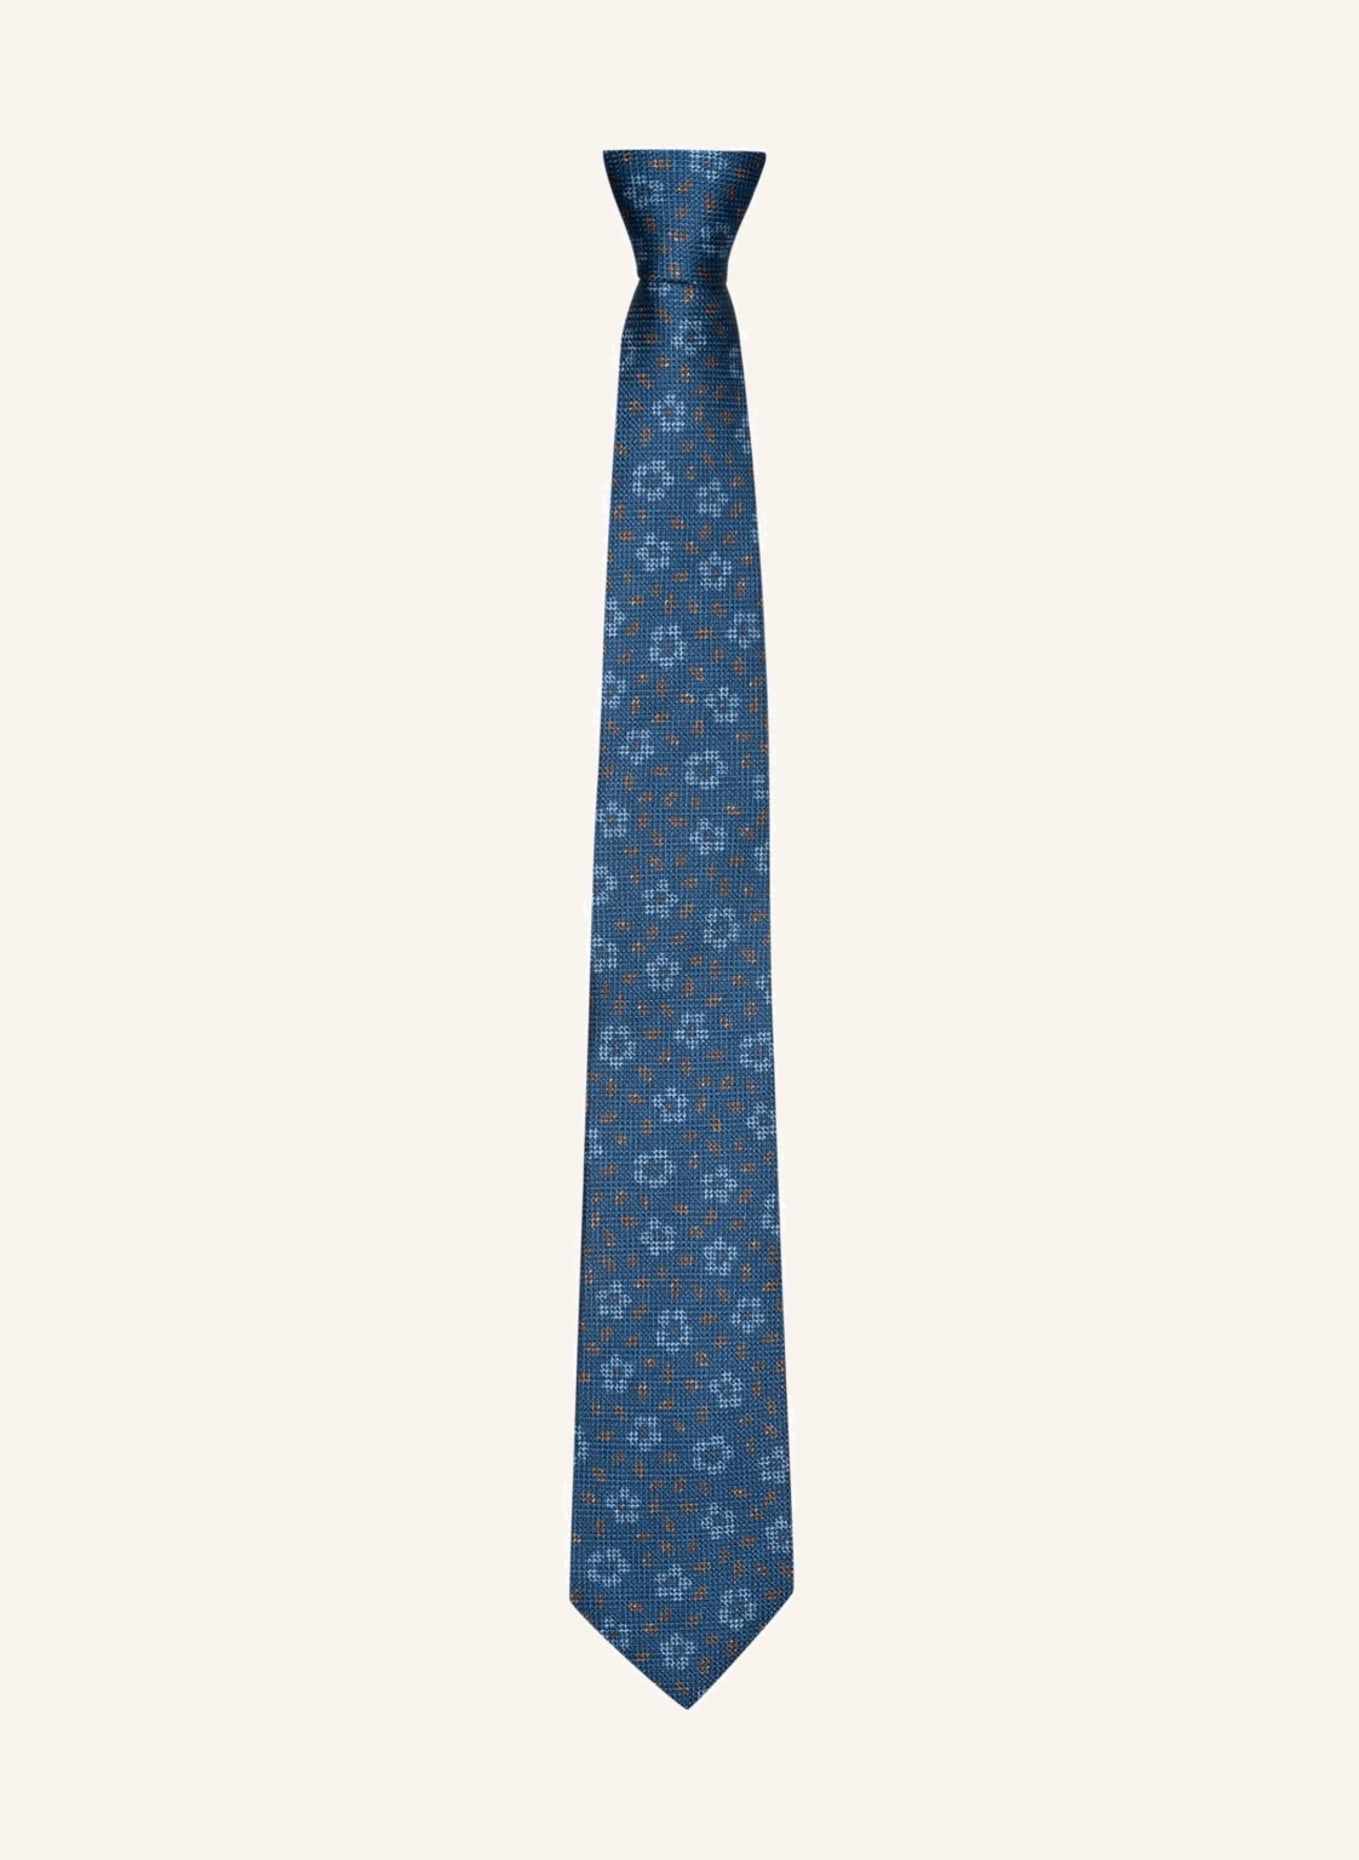 OLYMP SIGNATURE beige blau/ in hellblau/ Krawatte